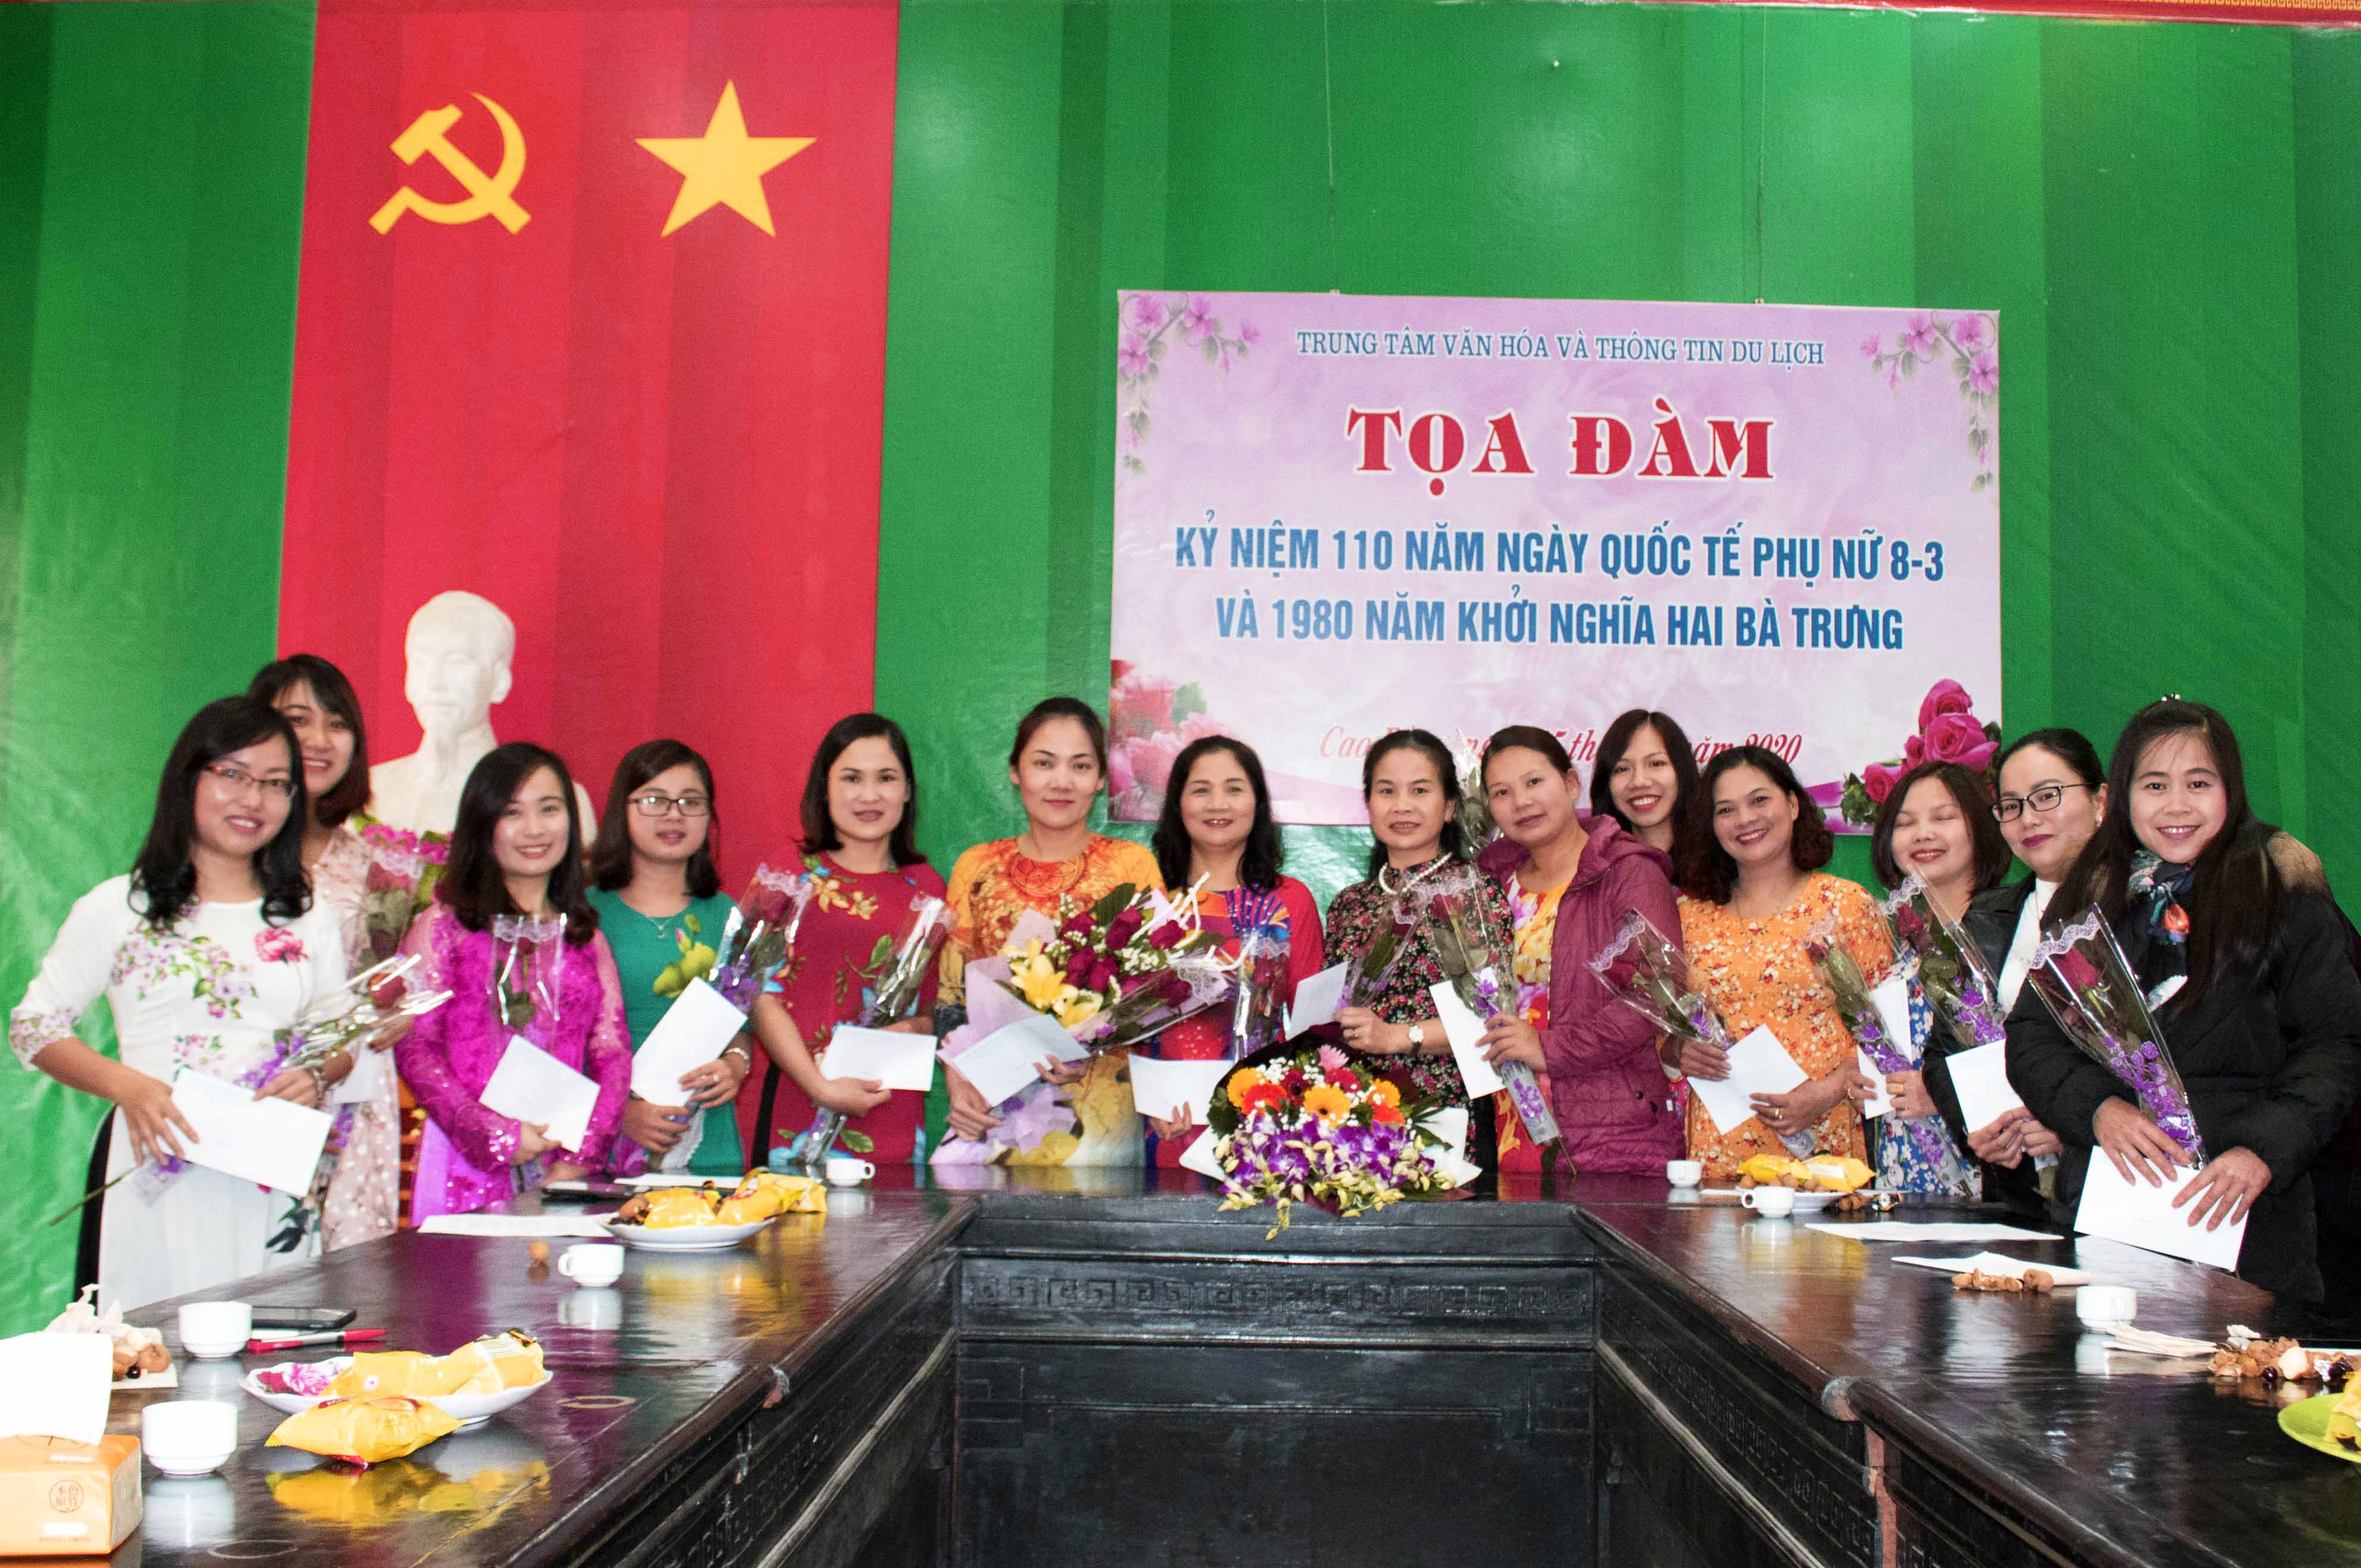 Phụ nữ Trung tâm Văn hóa và Thông tin du lịch Cao Bằng hưởng ứng sự kiện “Áo dài - Di sản văn hóa Việt Nam”